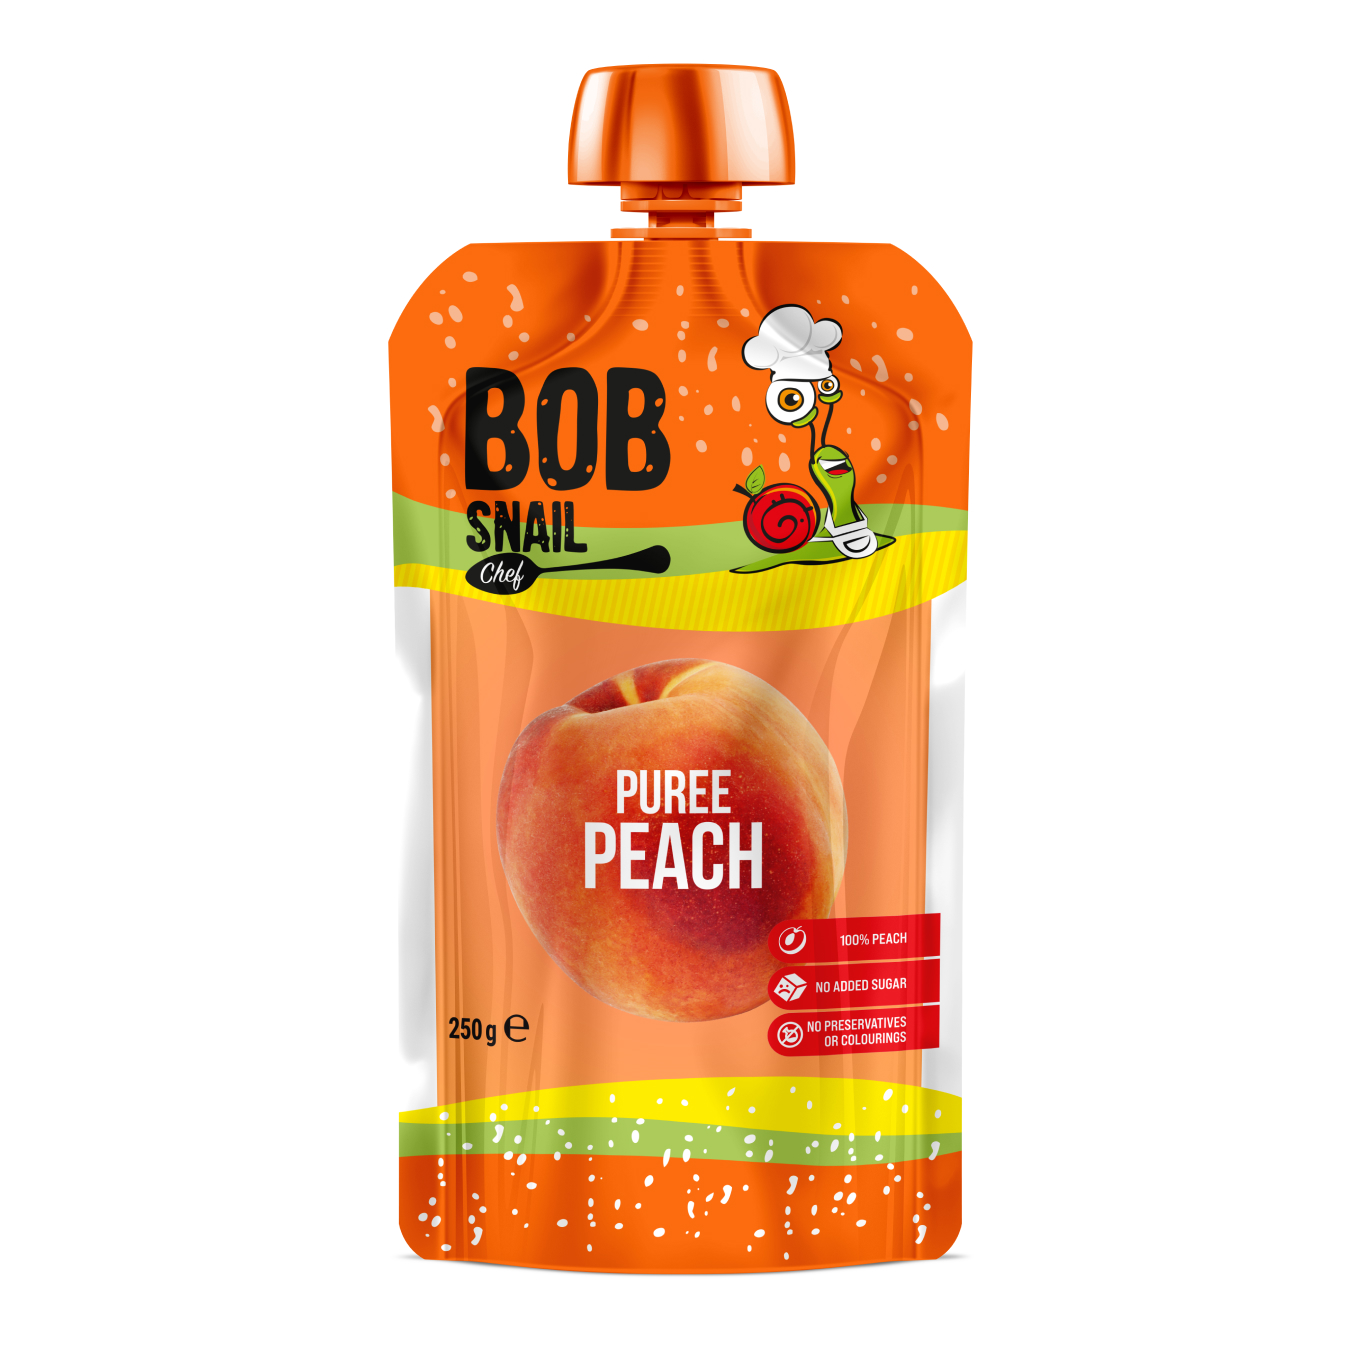 Bob Snail fruit puree Peach pasteurized 250g